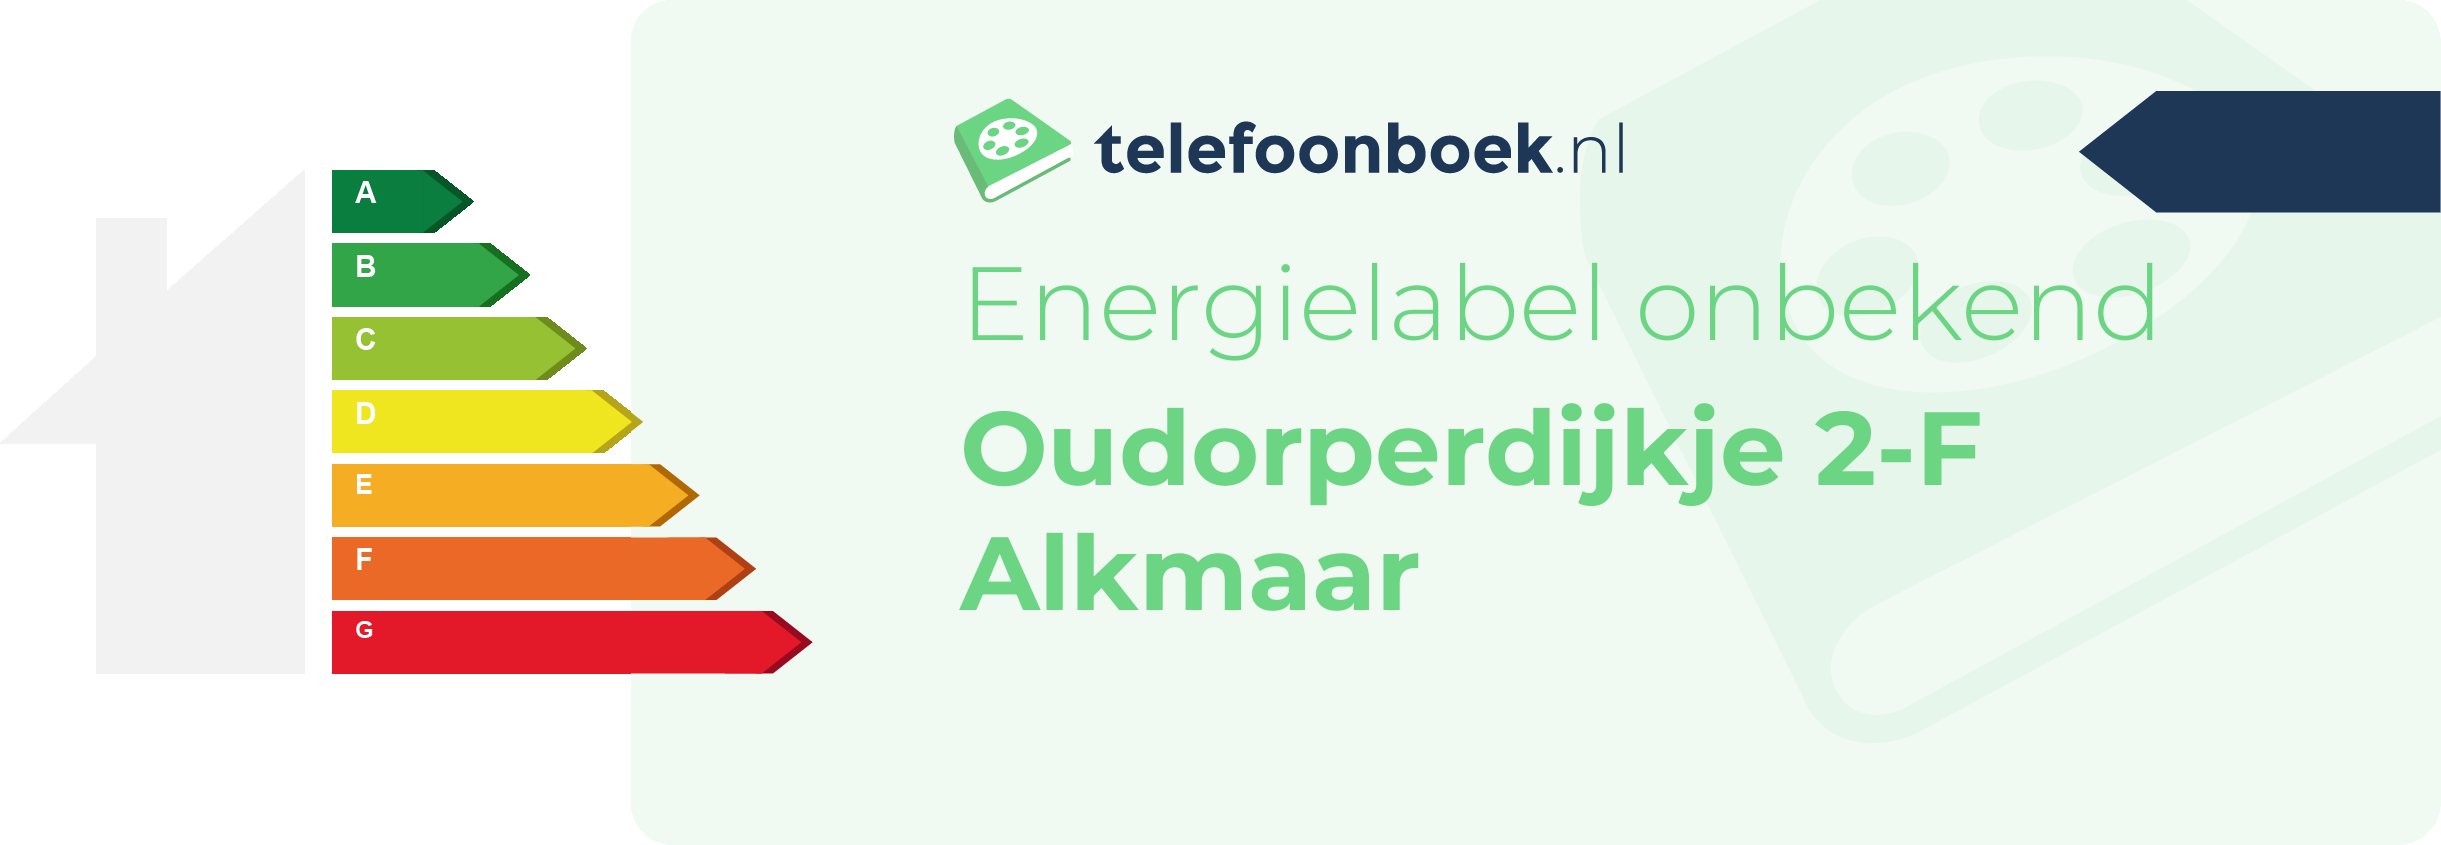 Energielabel Oudorperdijkje 2-F Alkmaar